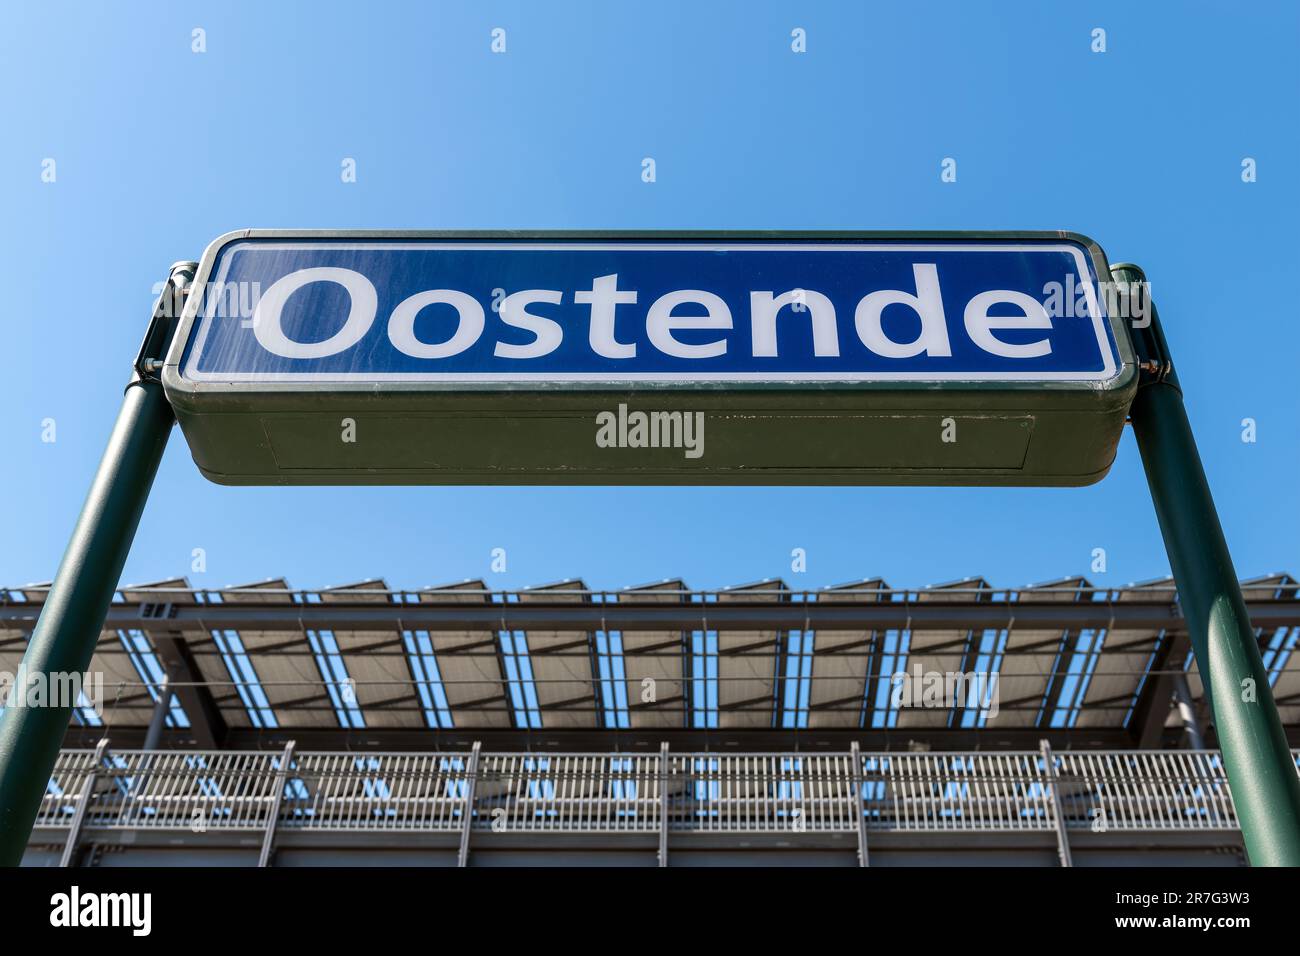 Namensschild der Stadt Oostende am Bahnsteig im Bahnhof Ostend, Belgien. Stockfoto